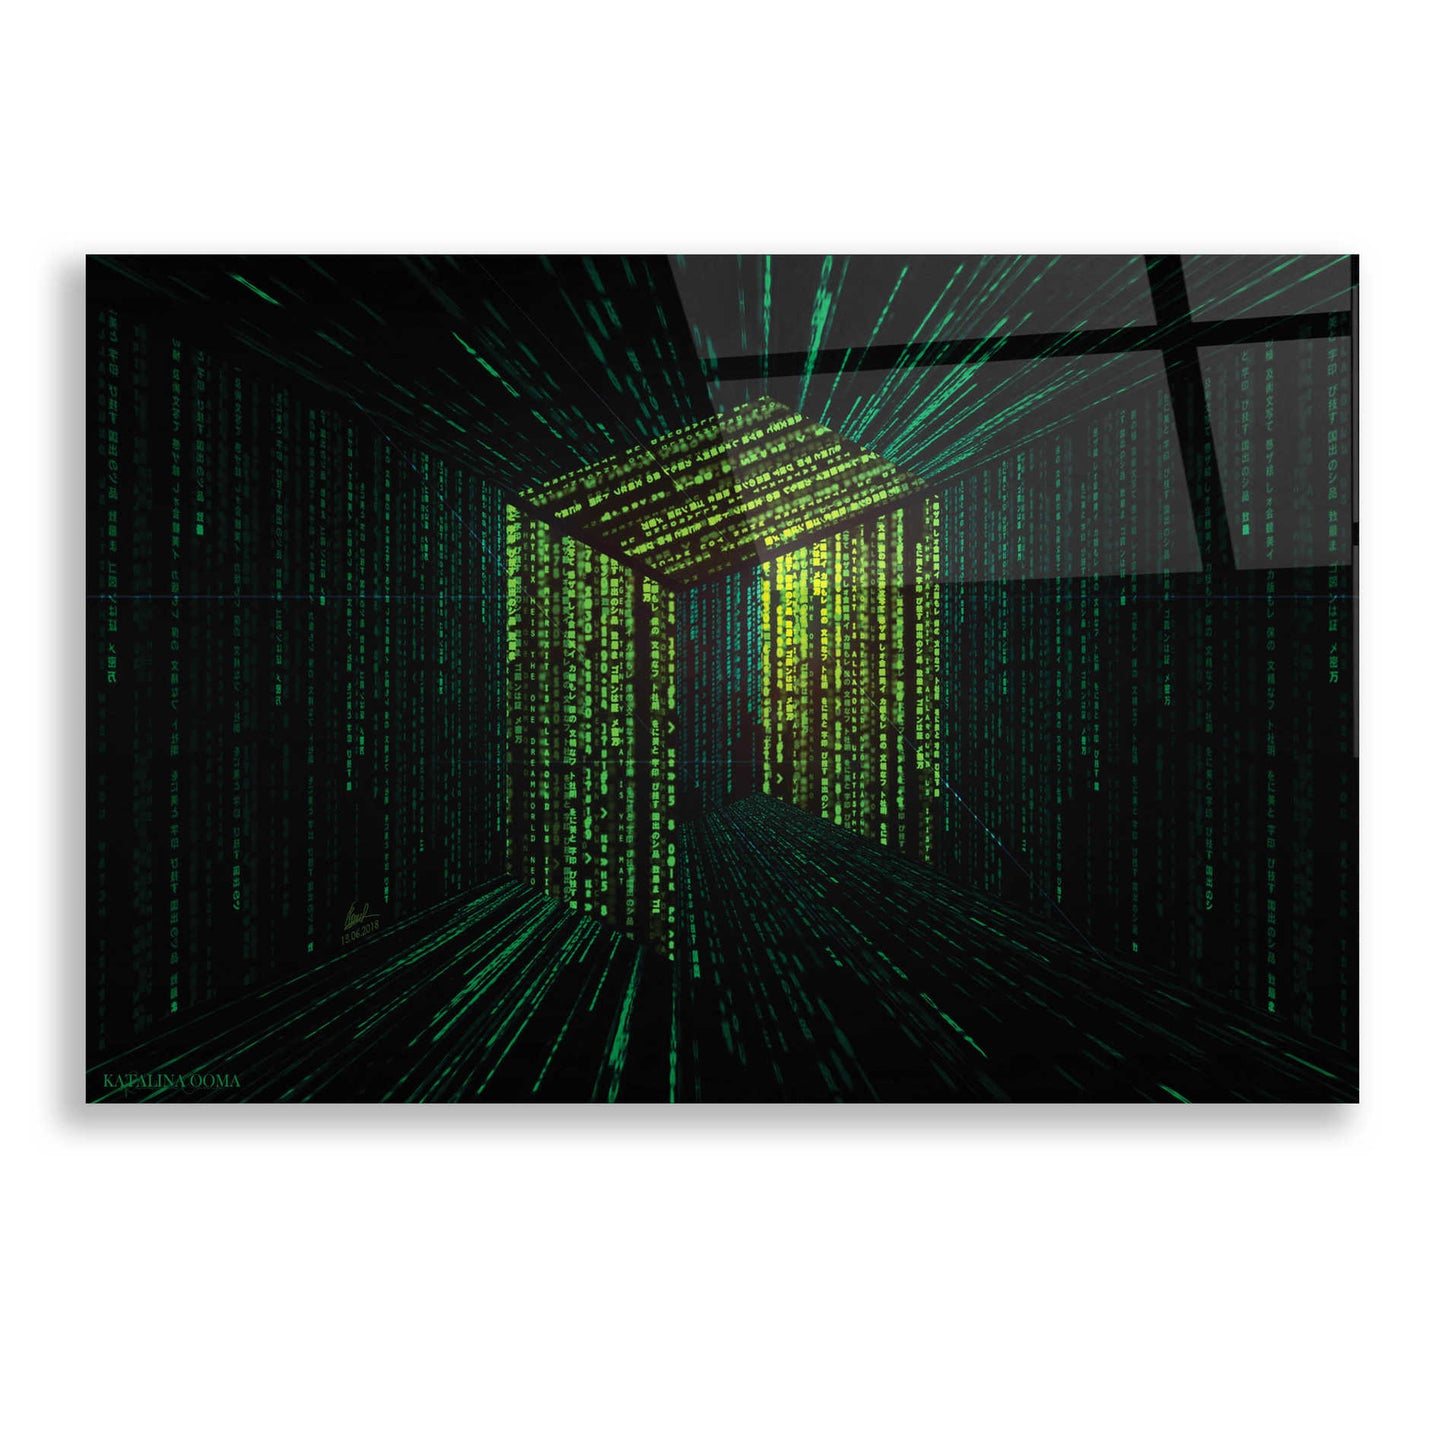 Epic Art 'Digital Rain Neo Crypto' by Katalina, Acrylic Glass Wall Art,24x16